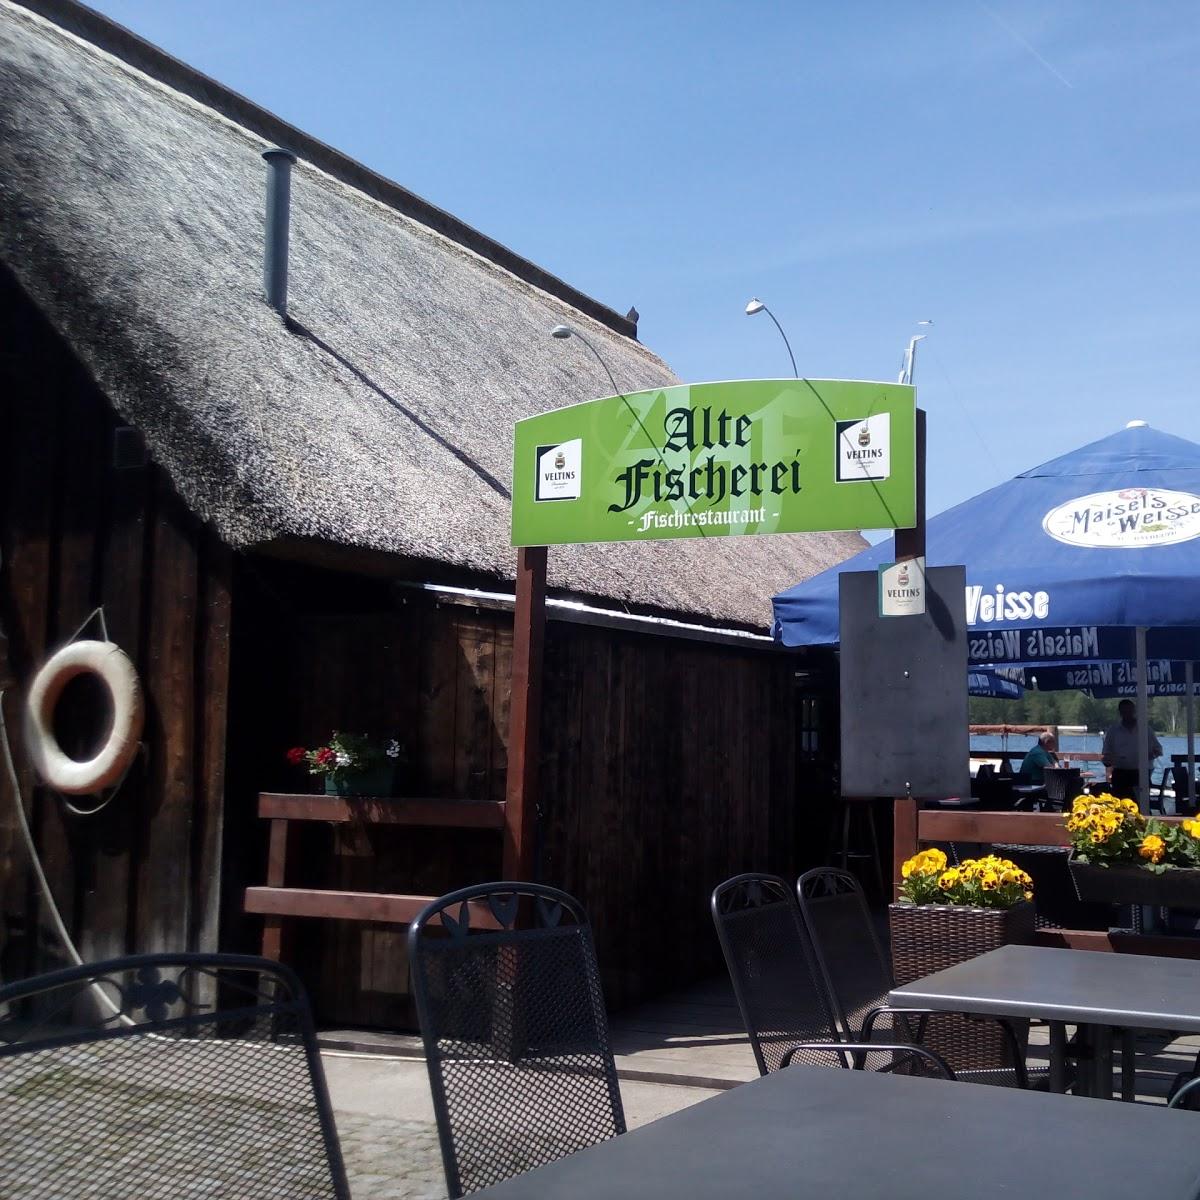 Restaurant "Alte-Fischerei" in  Schorfheide